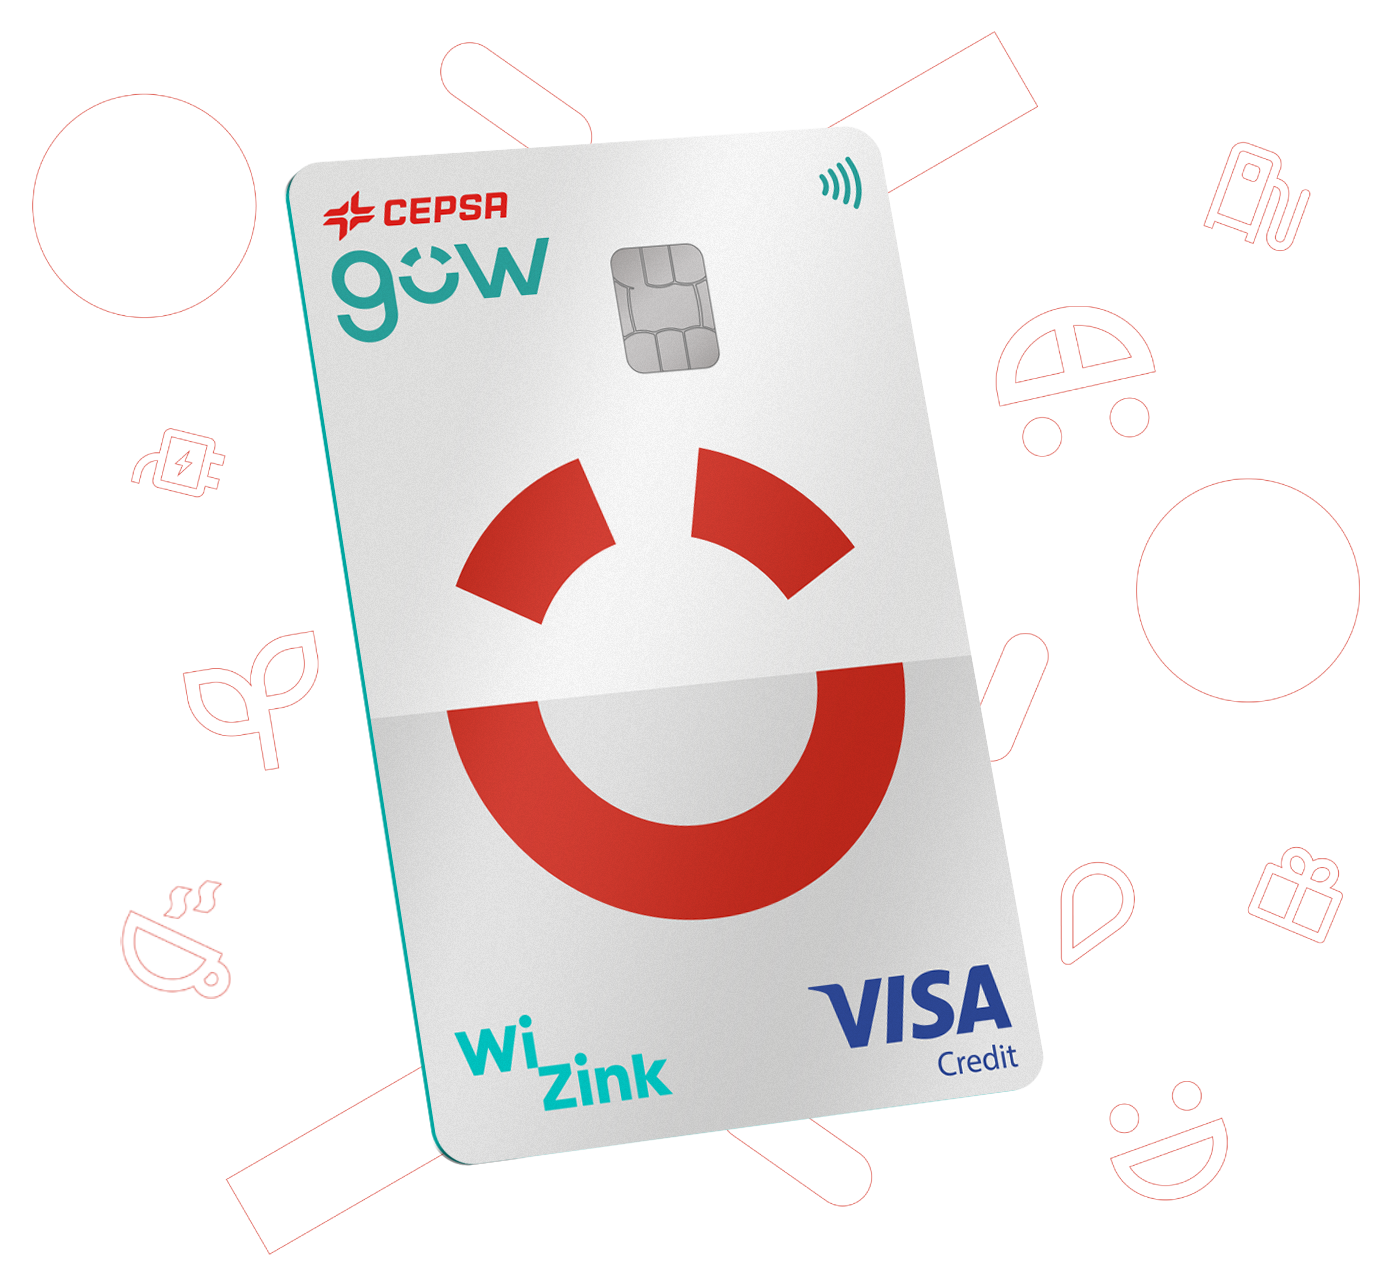 Cartão de crédito Cepsa Gow – Cartão de crédito com descontó em combustível